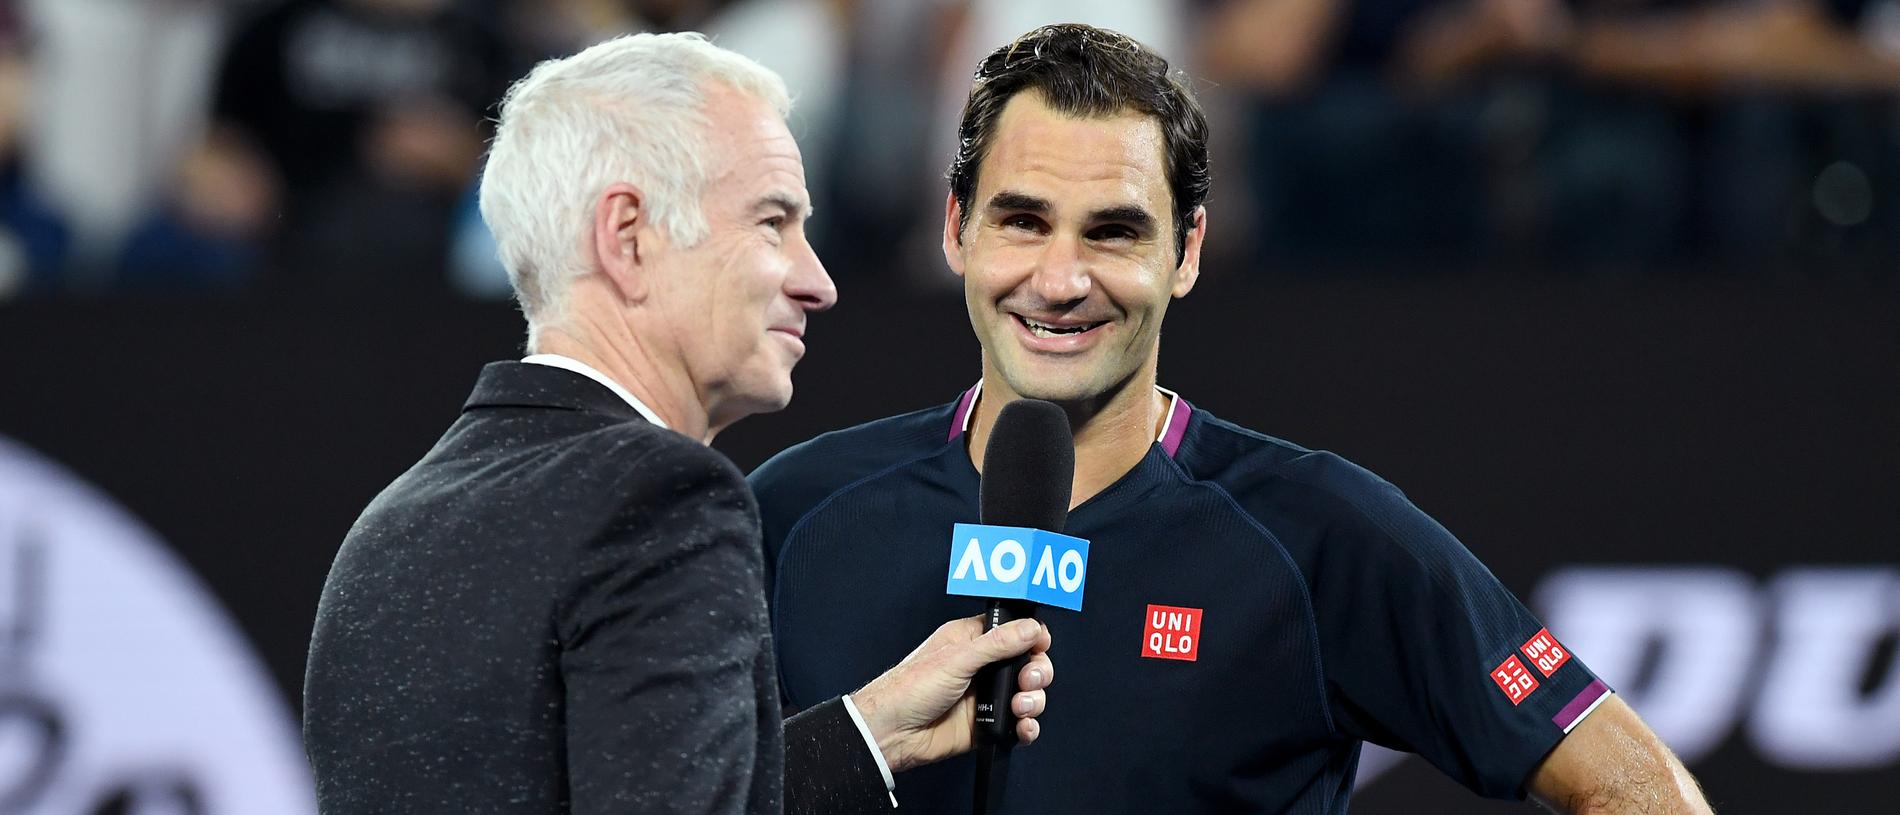 Australian Open 2020: Roger Federer v John Millman, John McEnroe believes  Roger Federer can win Australian Open